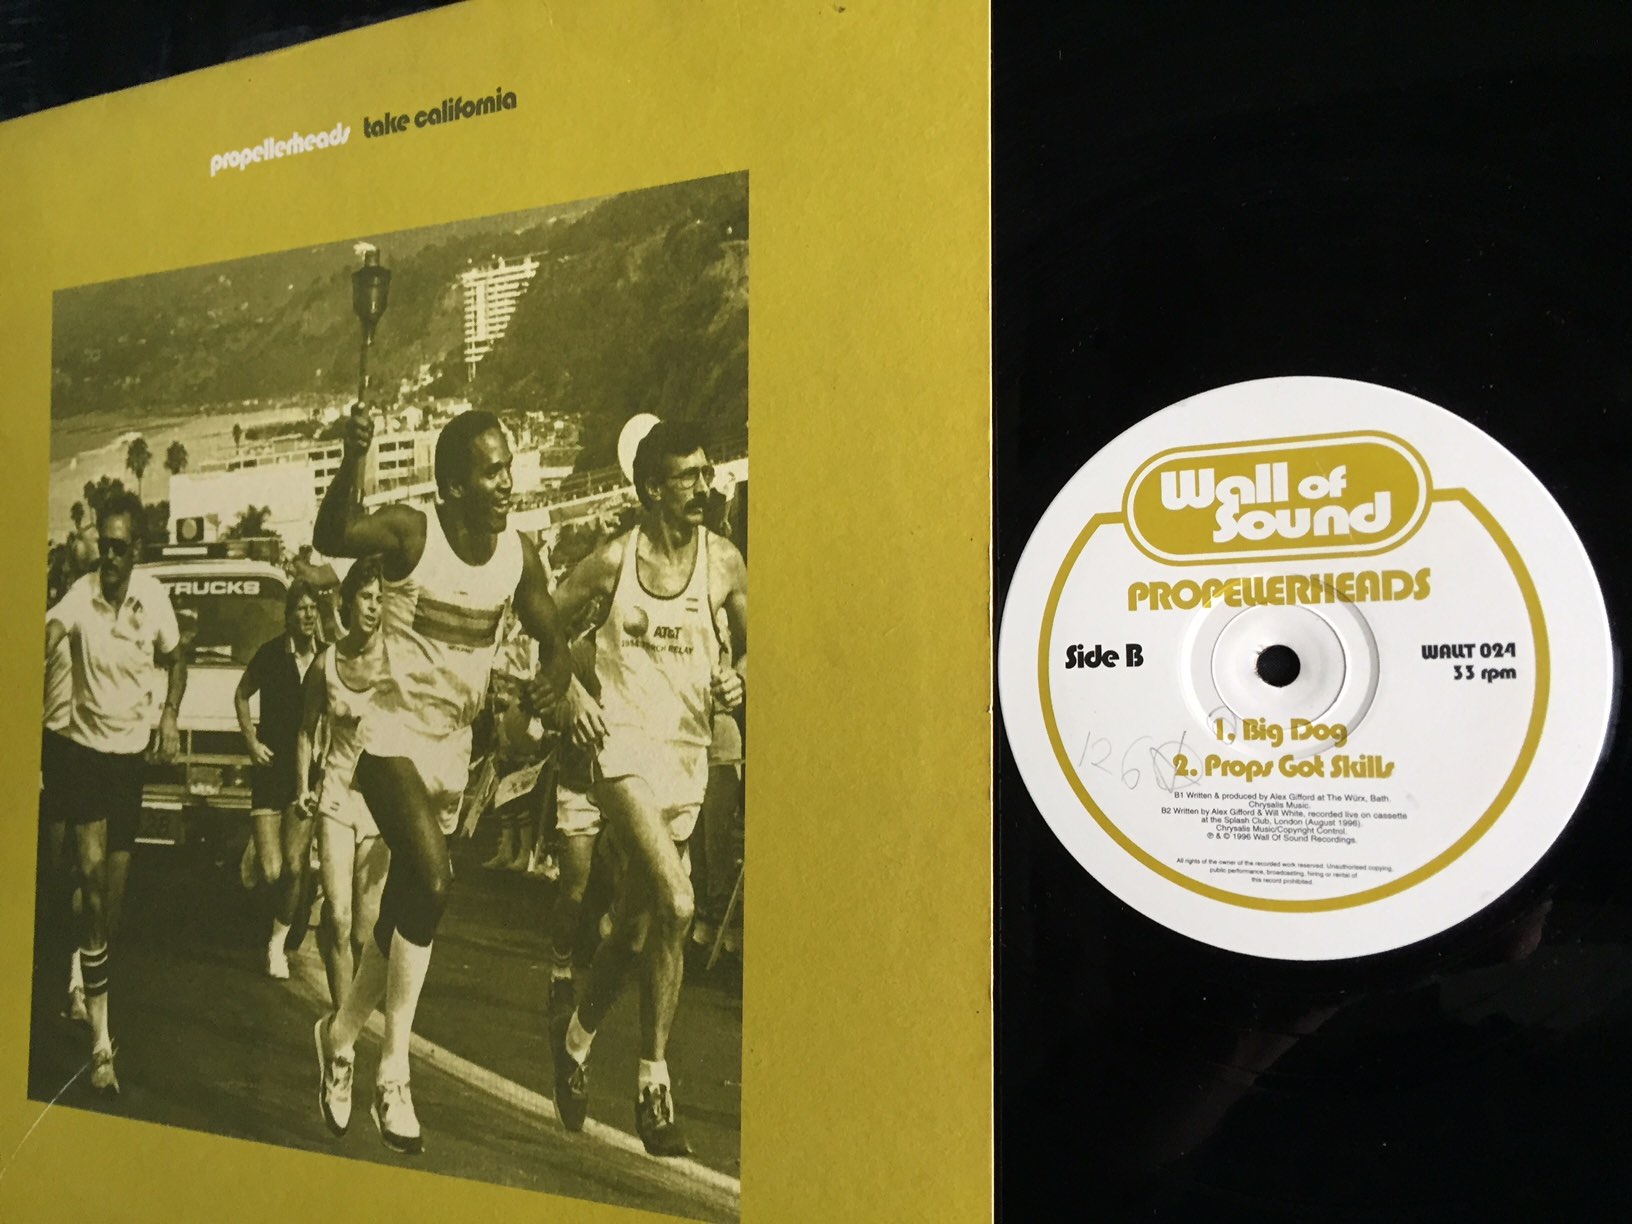 Roger Sanchez, Not Enough / Again, Vinyl (12, Promo, 33 ⅓ RPM)